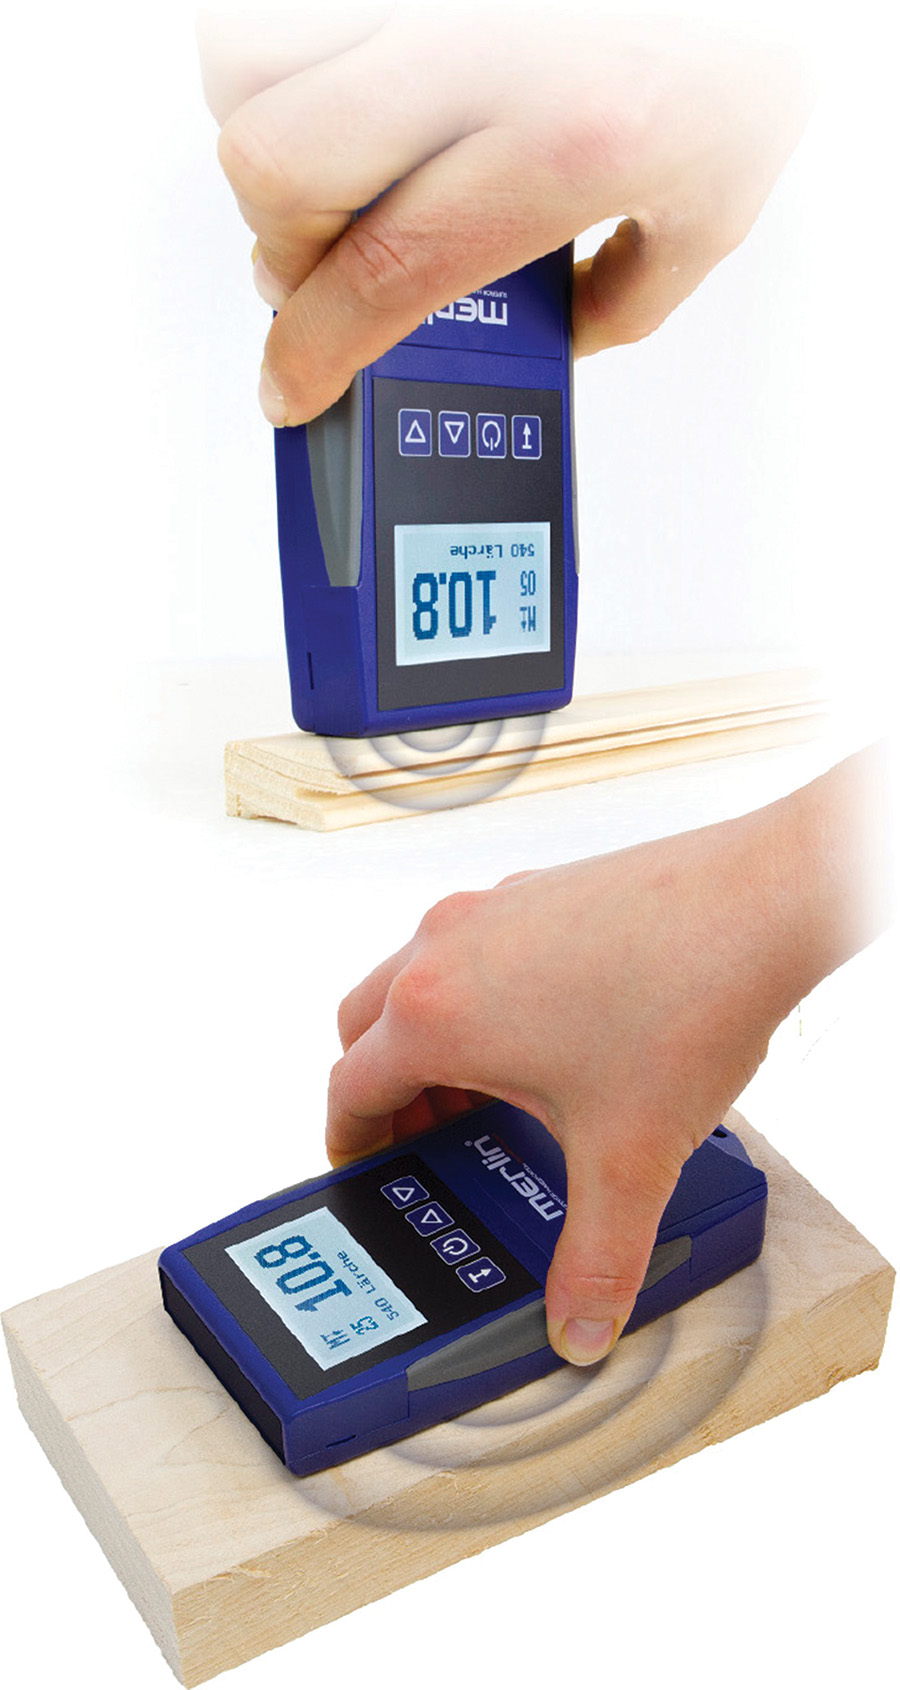 Nowość – wilgotnościomierz do posadzki oraz drewna surowego HM9 DUO, który pozwala na pomiar w pozycji pionowej (do 8 mm) oraz poziomej (do 40 mm). Fot. Penny Gondek